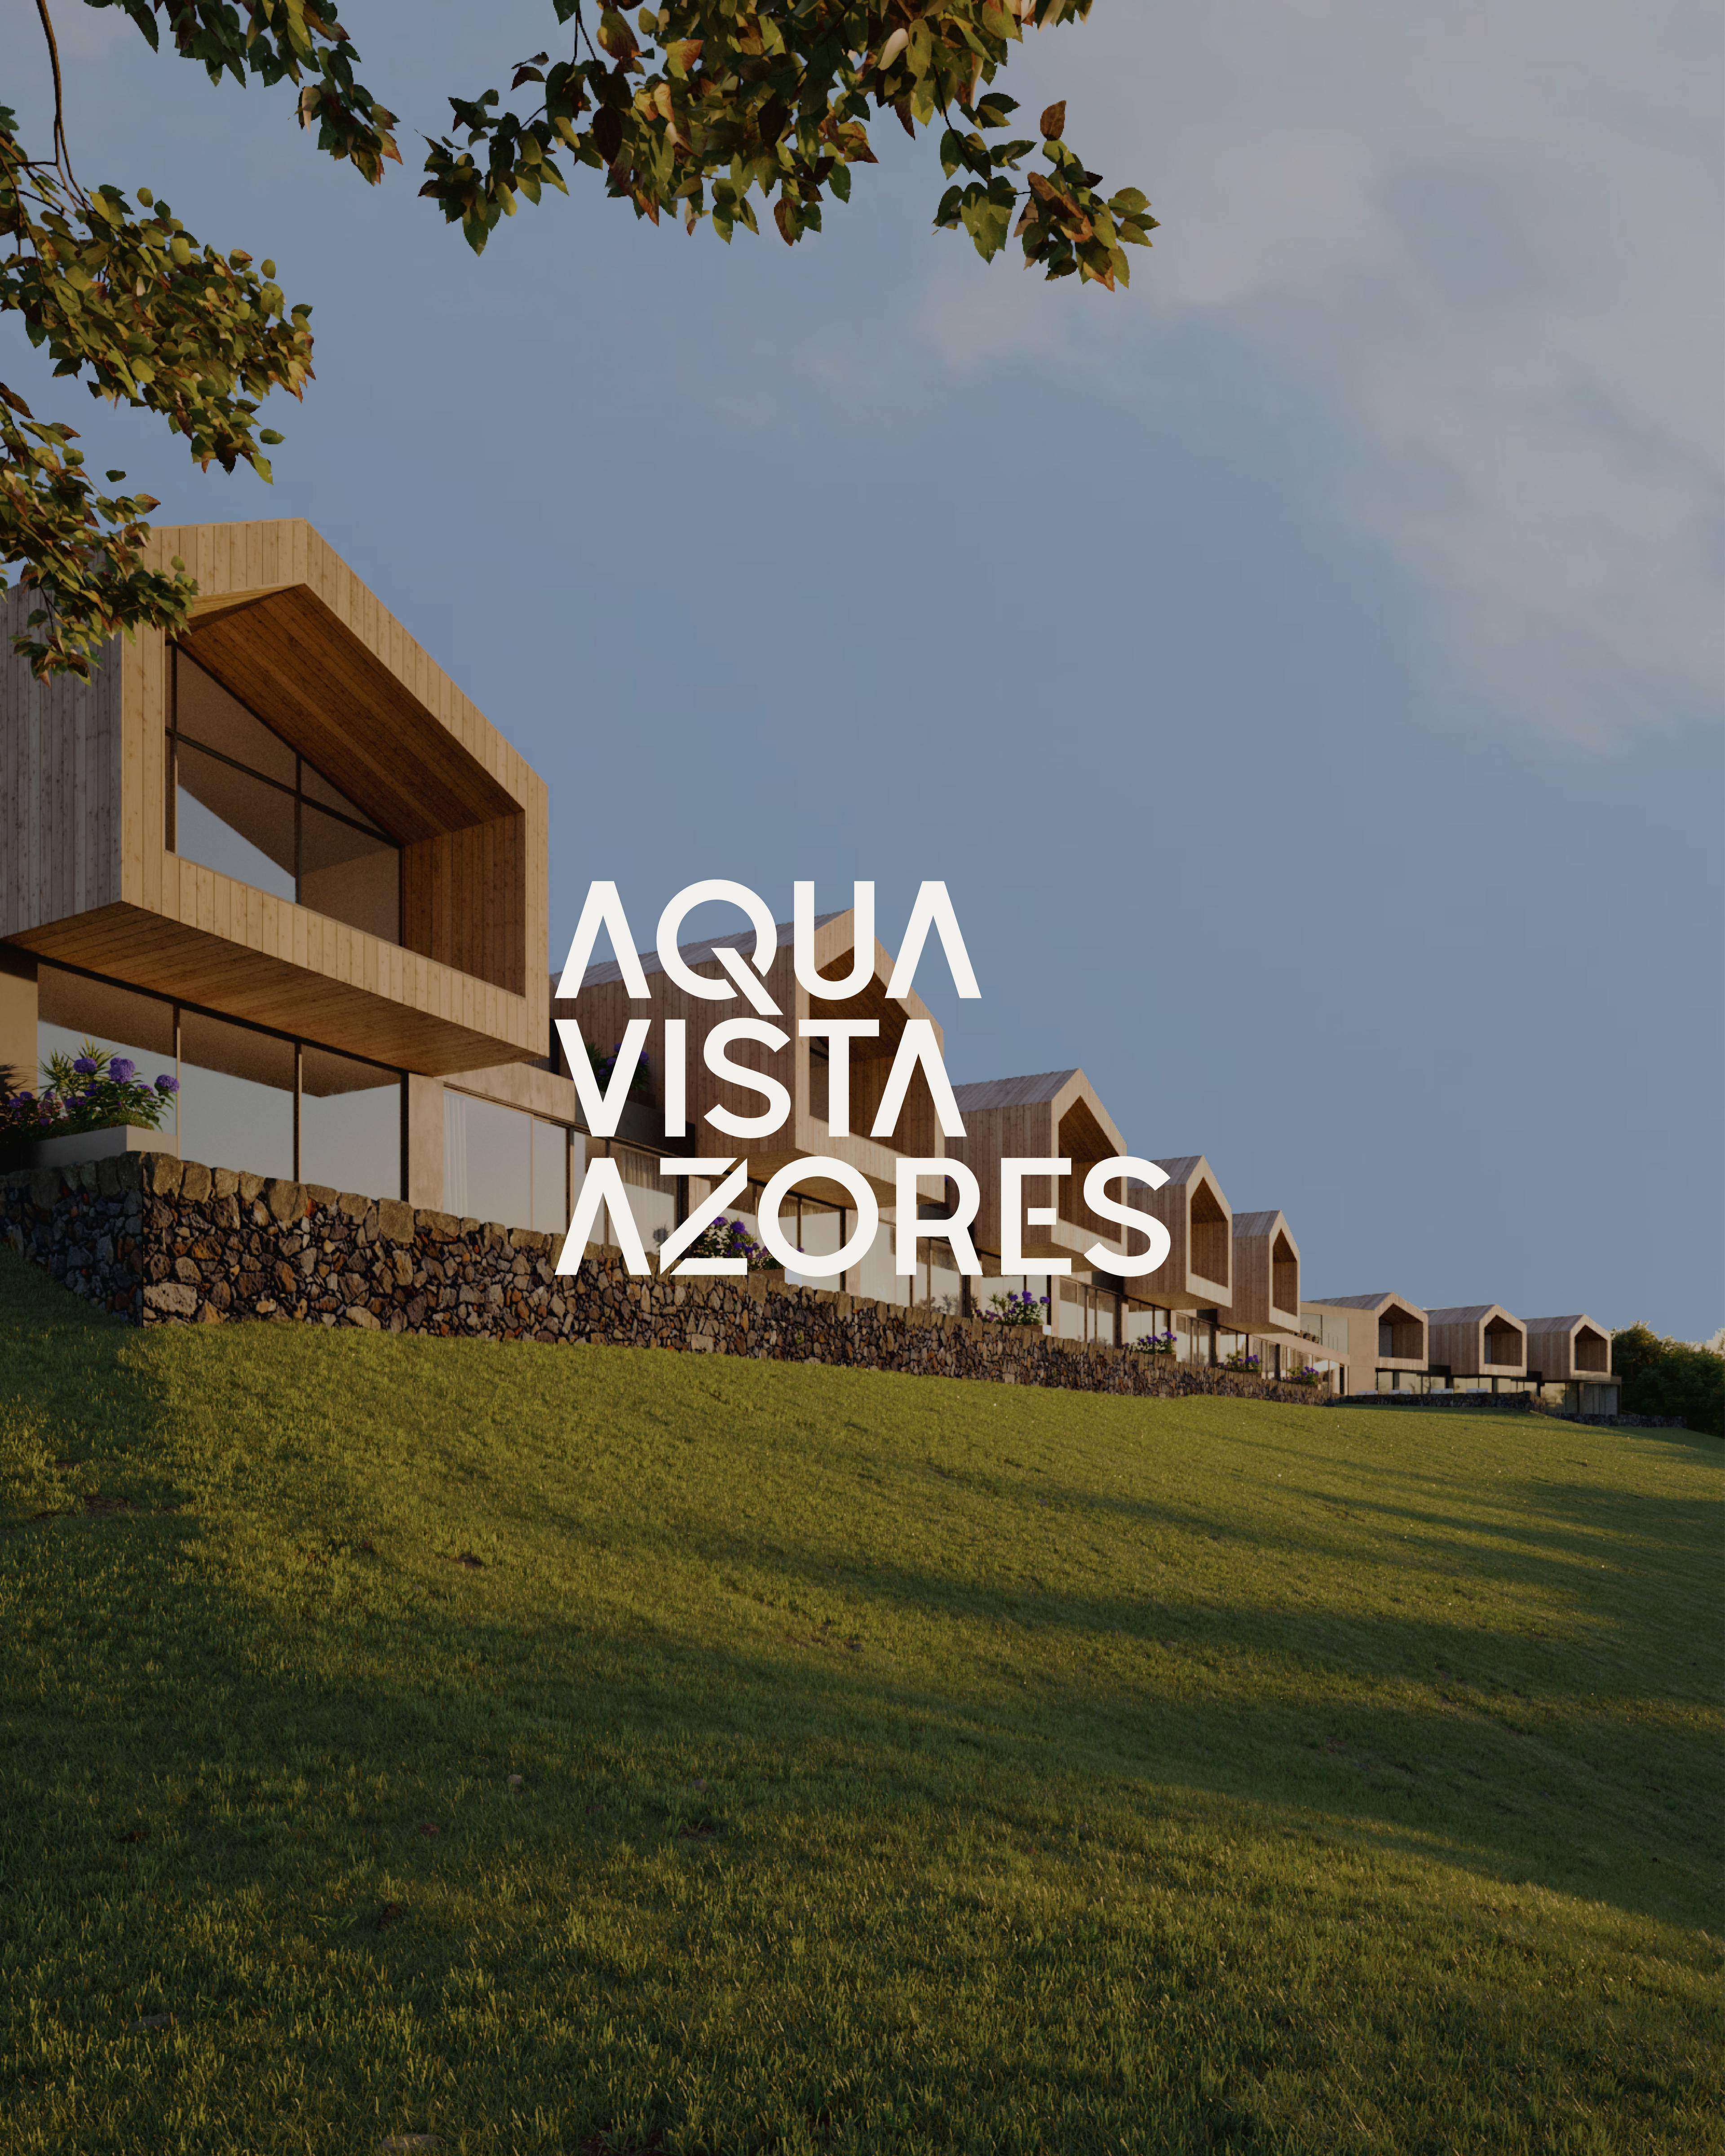 Aqua Vista Azores